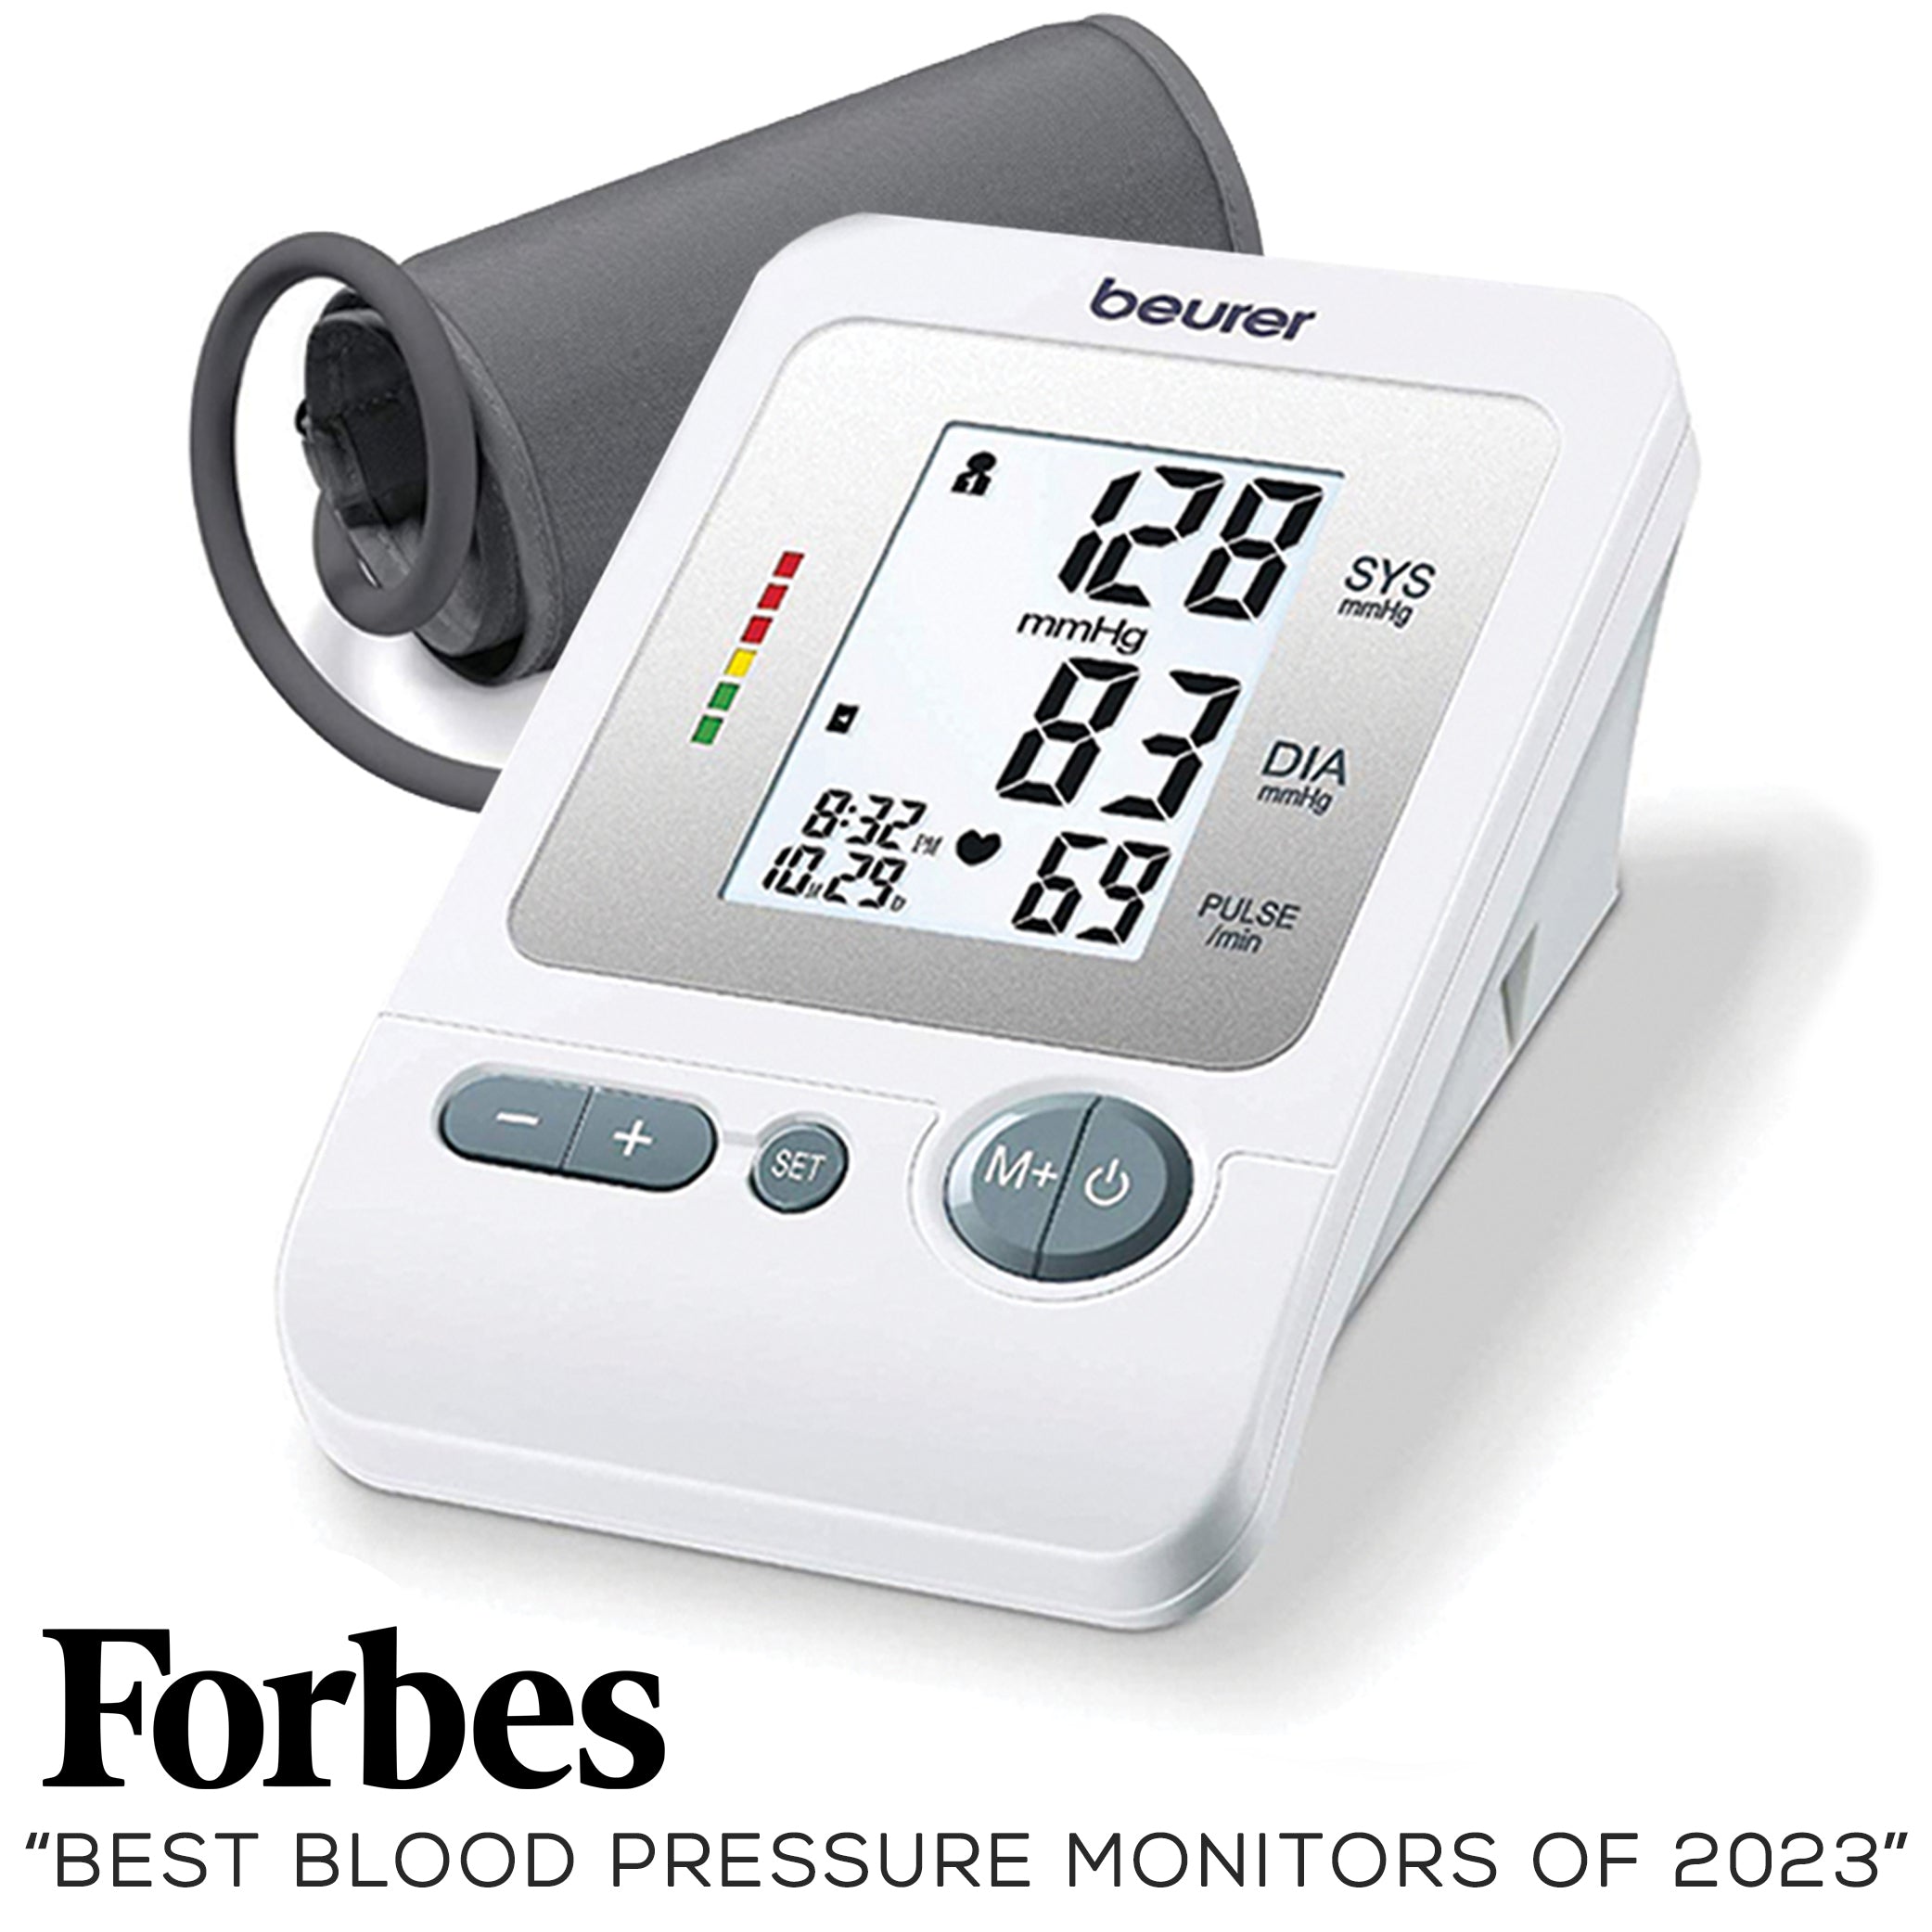 Beurer Upper Arm Blood Pressure Monitor, BM26 voted forbes best blood pressure monitor